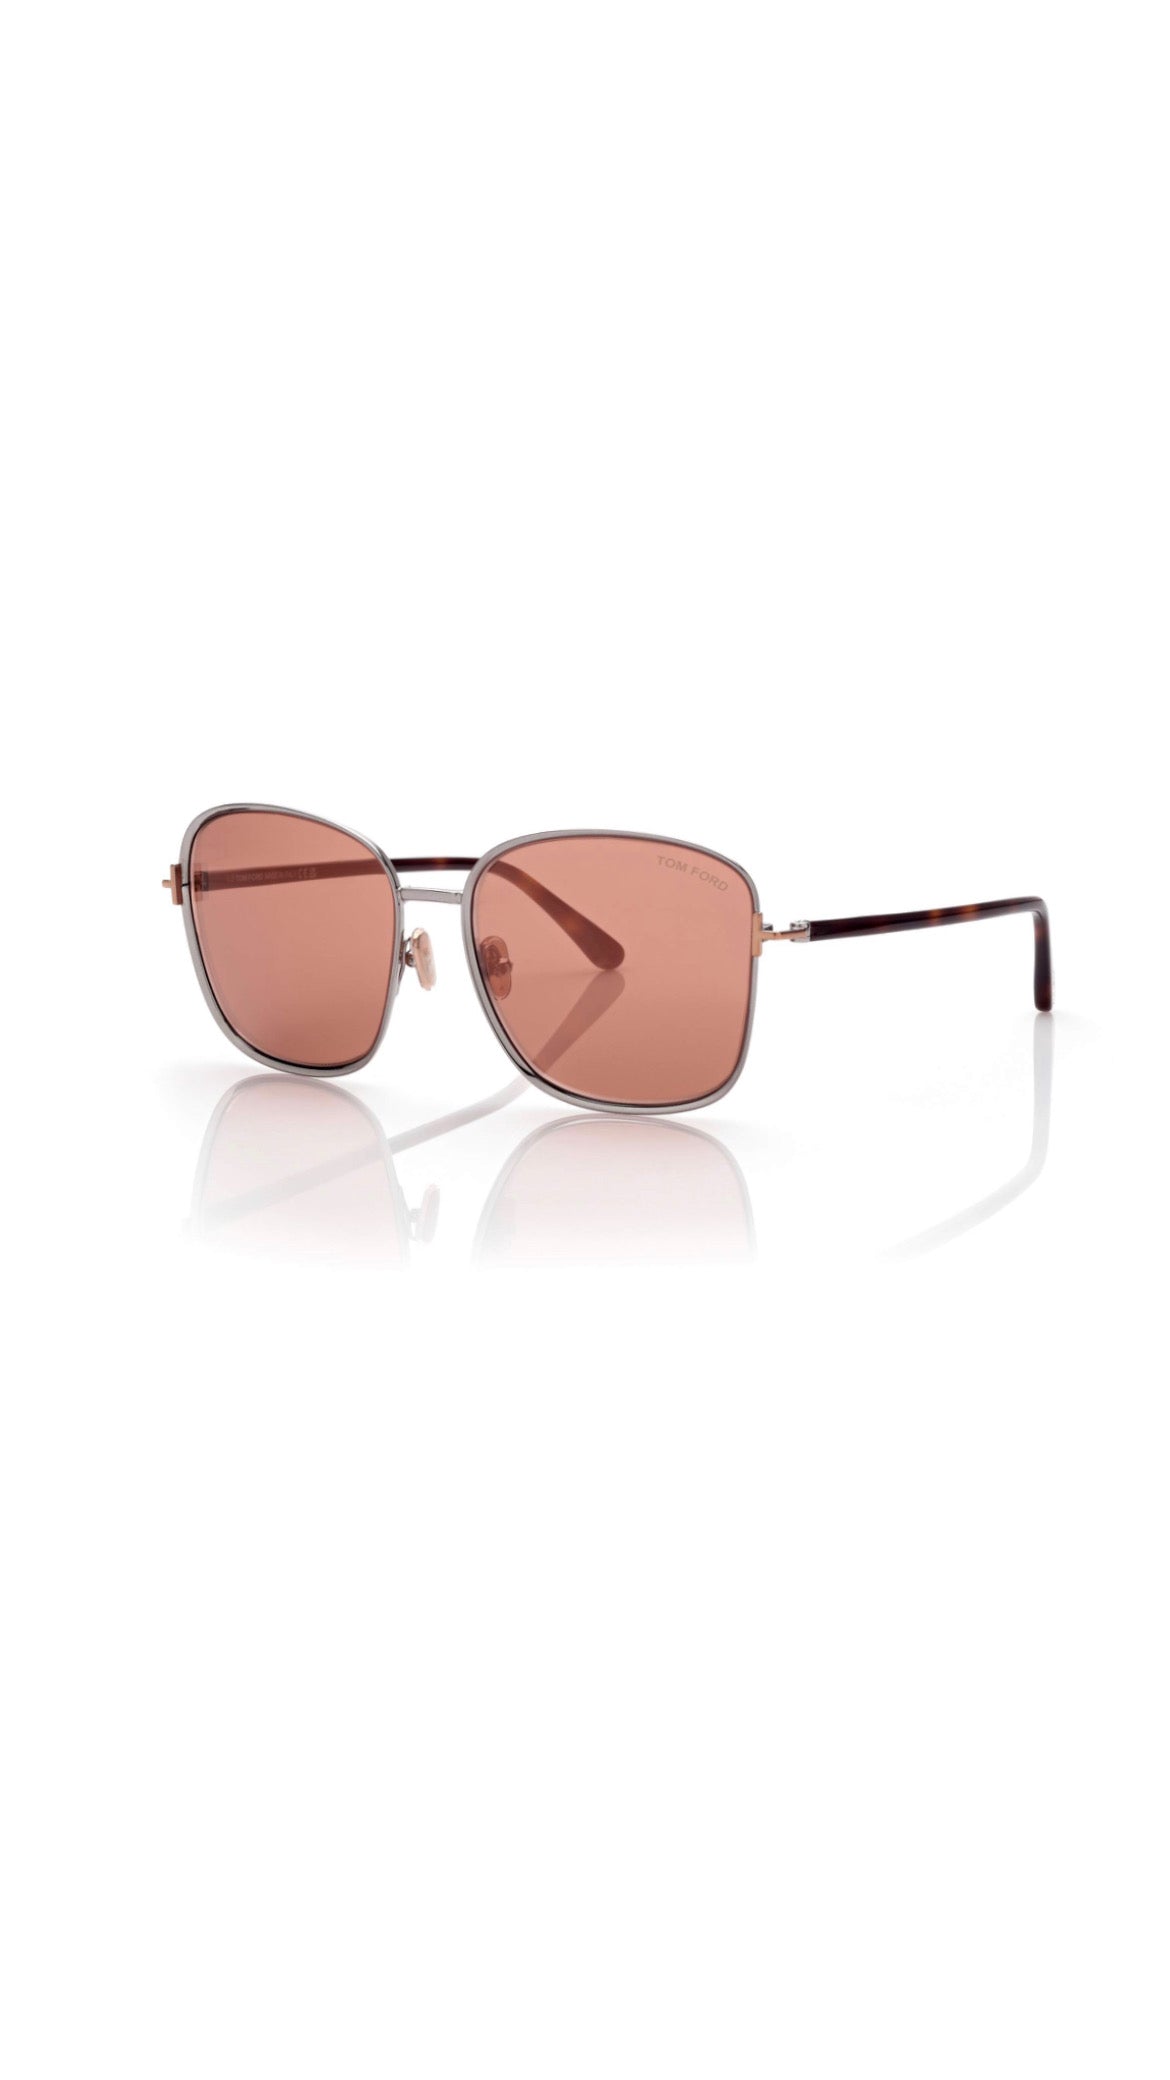 Tom Ford Sunglasses- Fern - Light Ruthenium/Rose Lenses